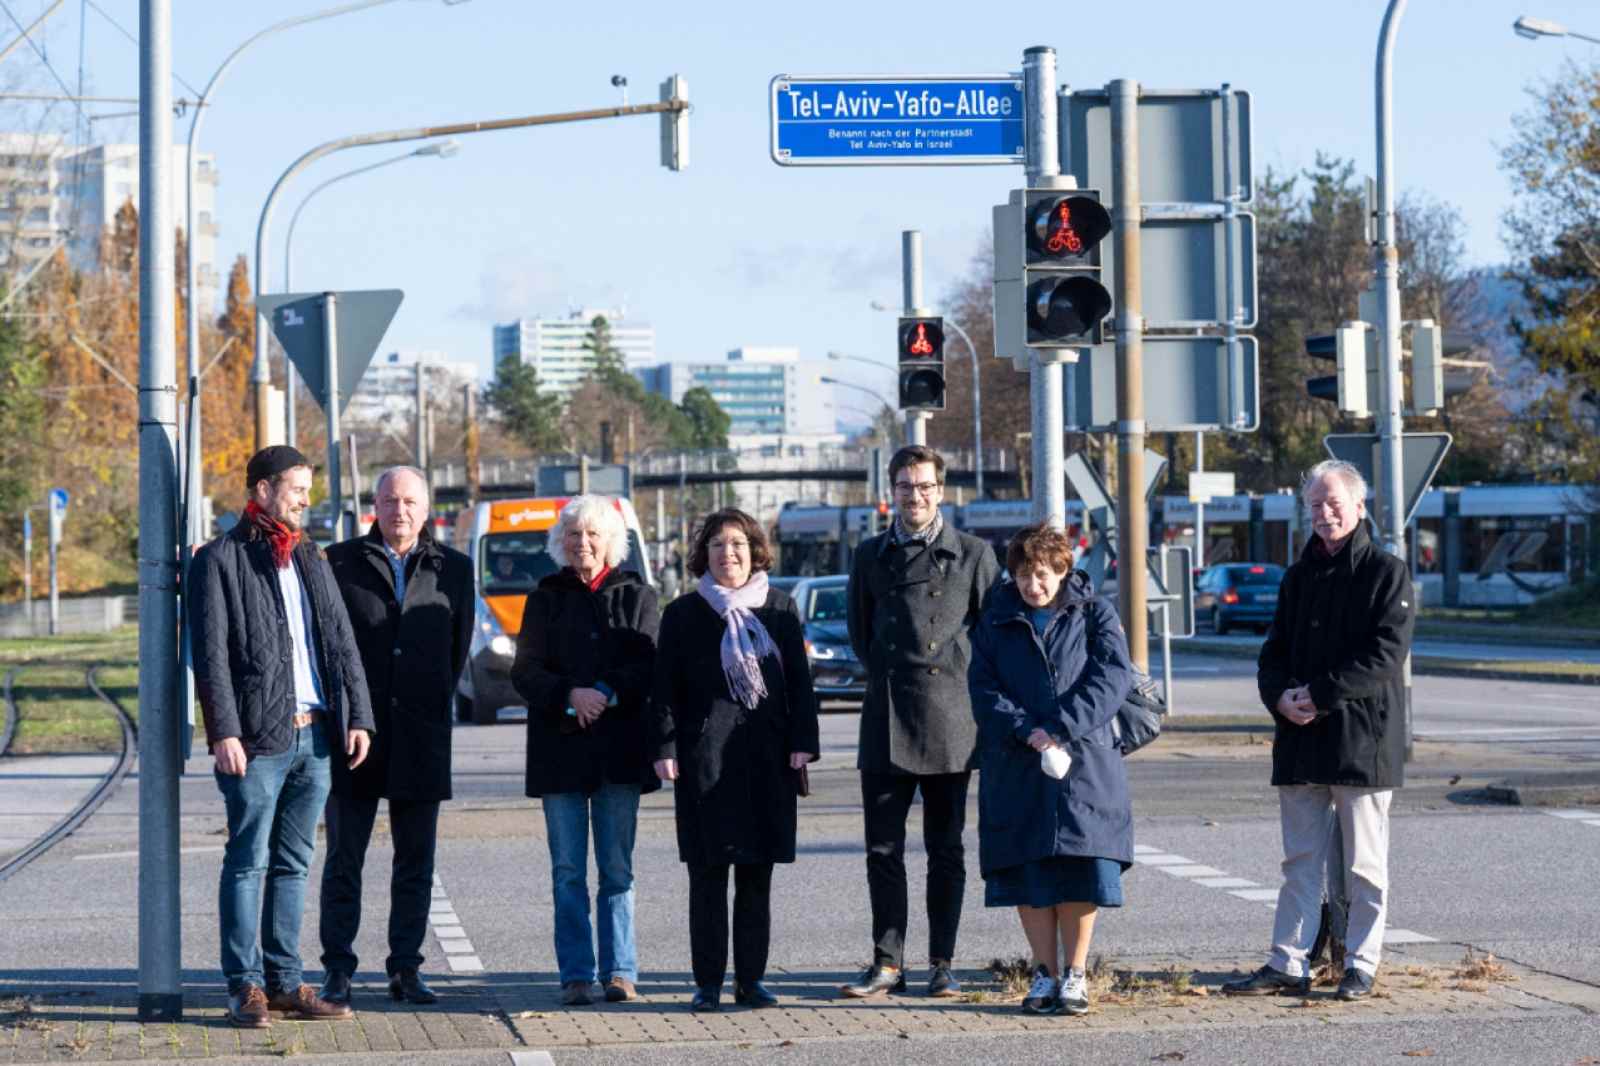 אנשים עומדים ליד שלט רחוב שדרת תל אביב יפו בפרייבורג גרמניה